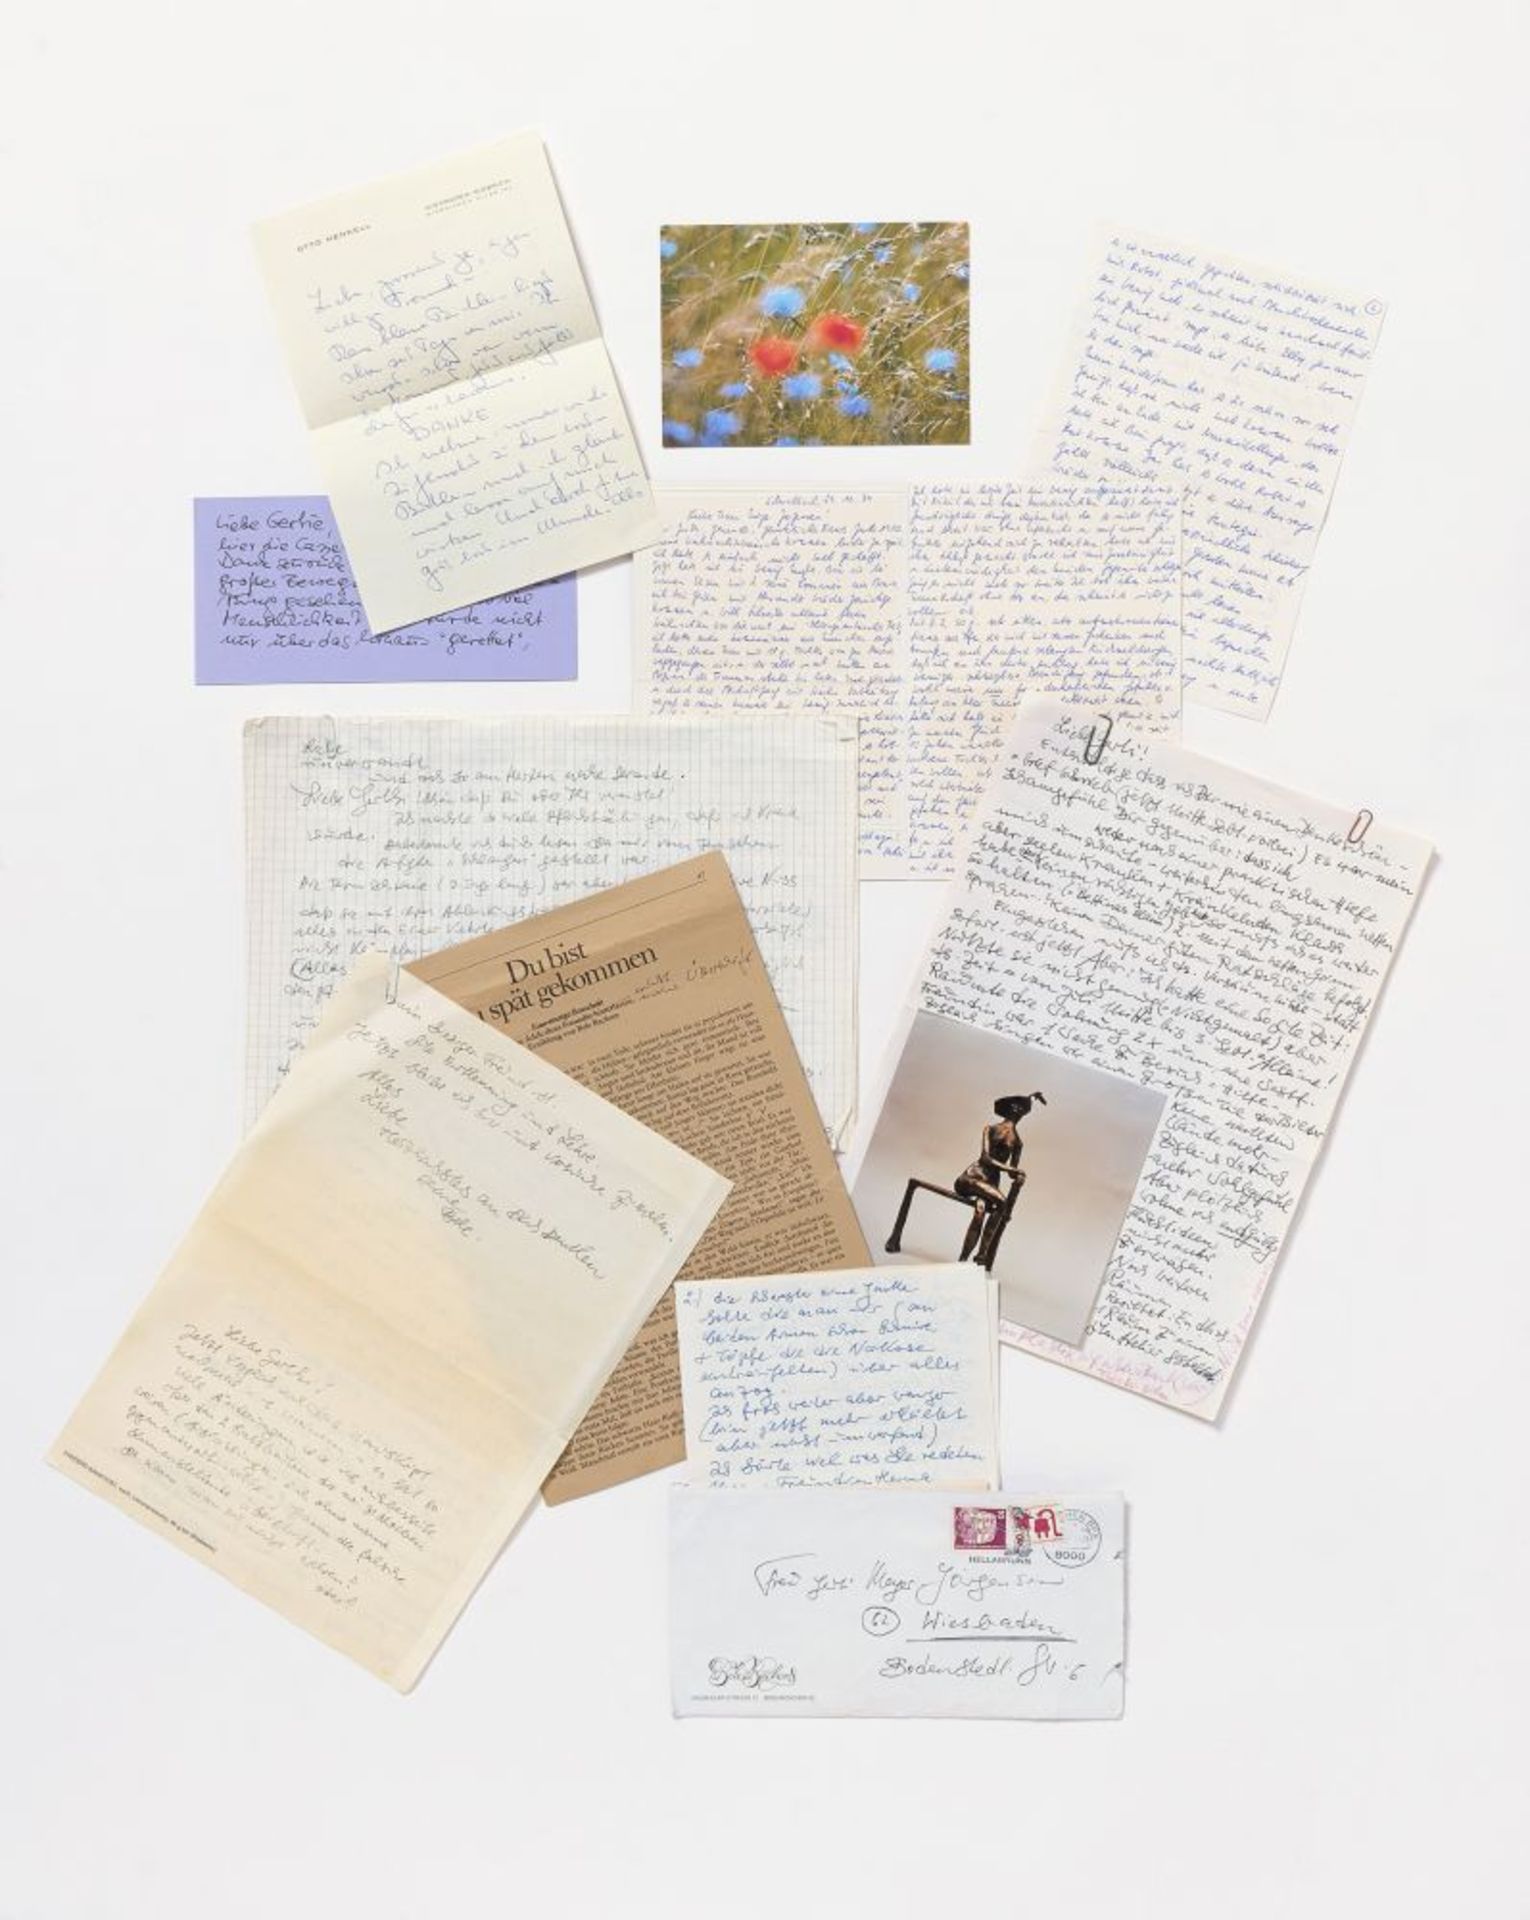 Bele Bachem, 40 eigh. Briefe, Karten, t. mit Zeichnungen. Von ca. 1974 bis um 2003. - An Gertrude Me - Image 8 of 12